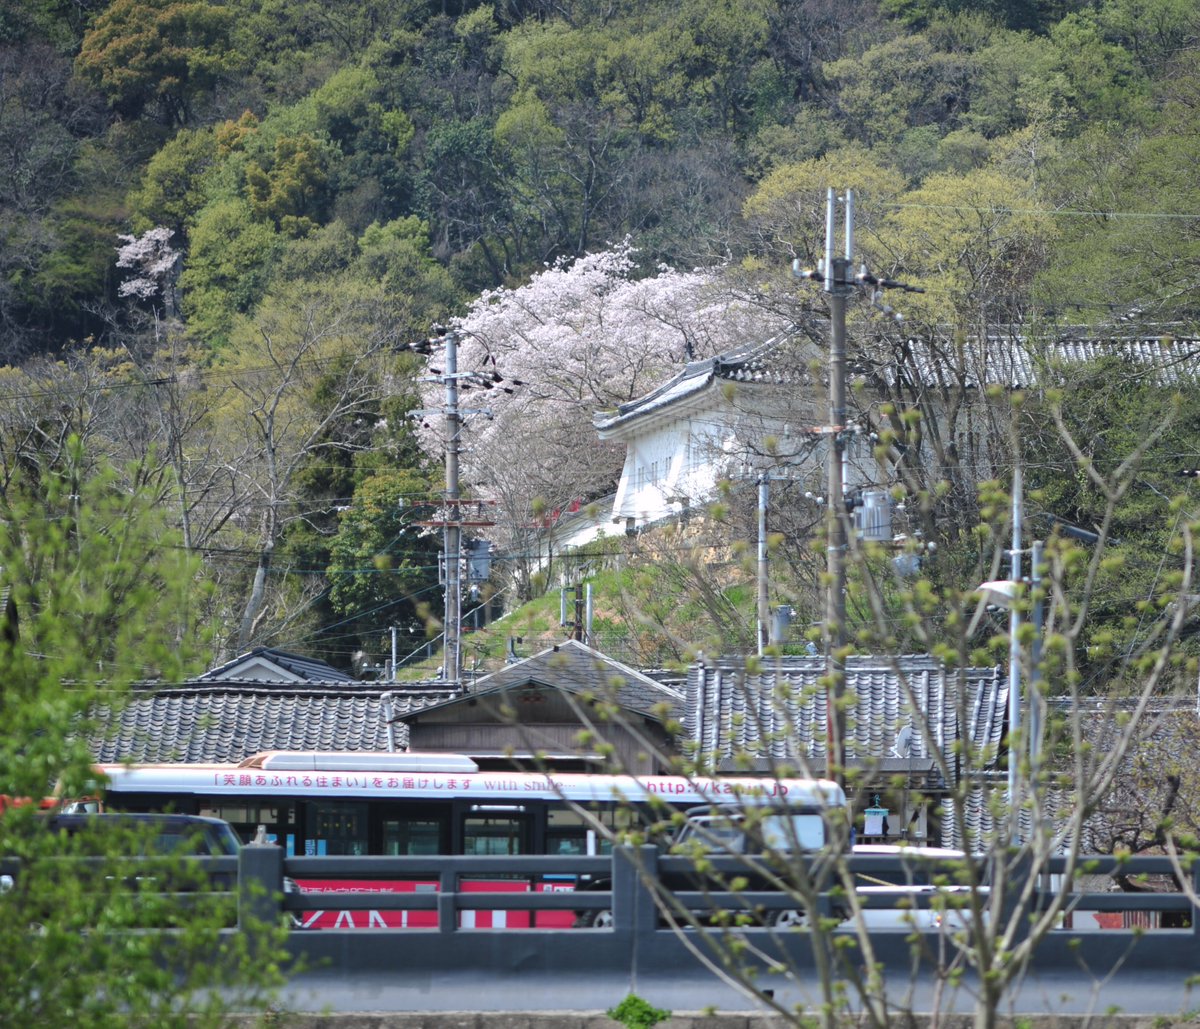 ✨今日のカモ✨
龍野 兵庫県 #揖保川
木曜日 
ツバメがとんでいる #夏鳥
最近みるようになった。いつも3月に龍野に到着します。
カルガモは年中いてます。
#留鳥
龍野城 さくら 神姫バス